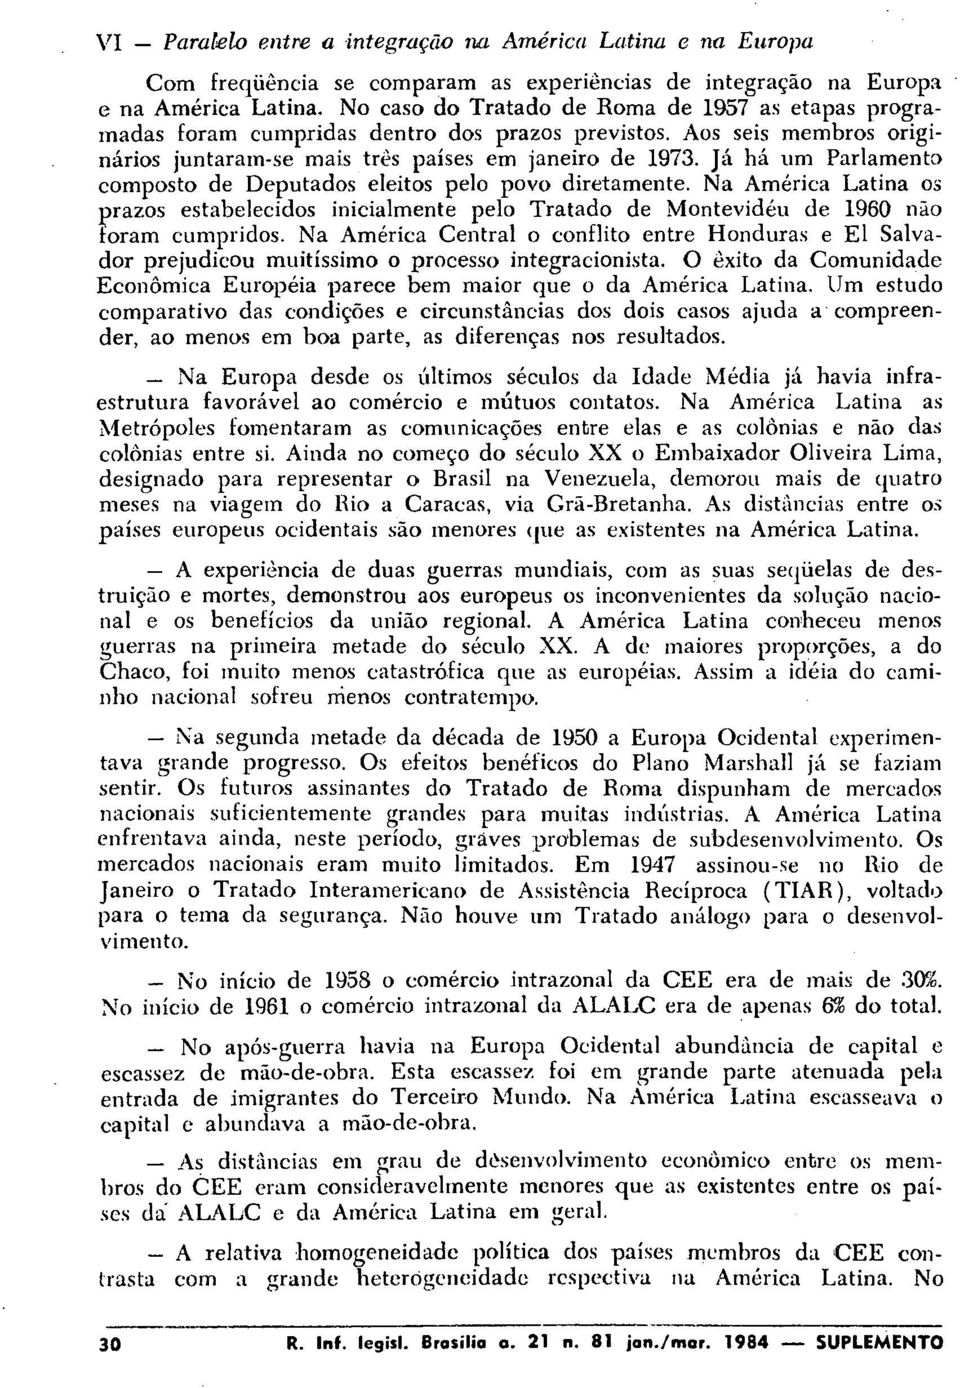 Já há um Parlamento composto de Deputados eleitos pelo povo diretamente. Na América Latina os prazos estabelecidos inicialmente pelo Tratado de Montevidéu de 1960 não foram cumpridos.